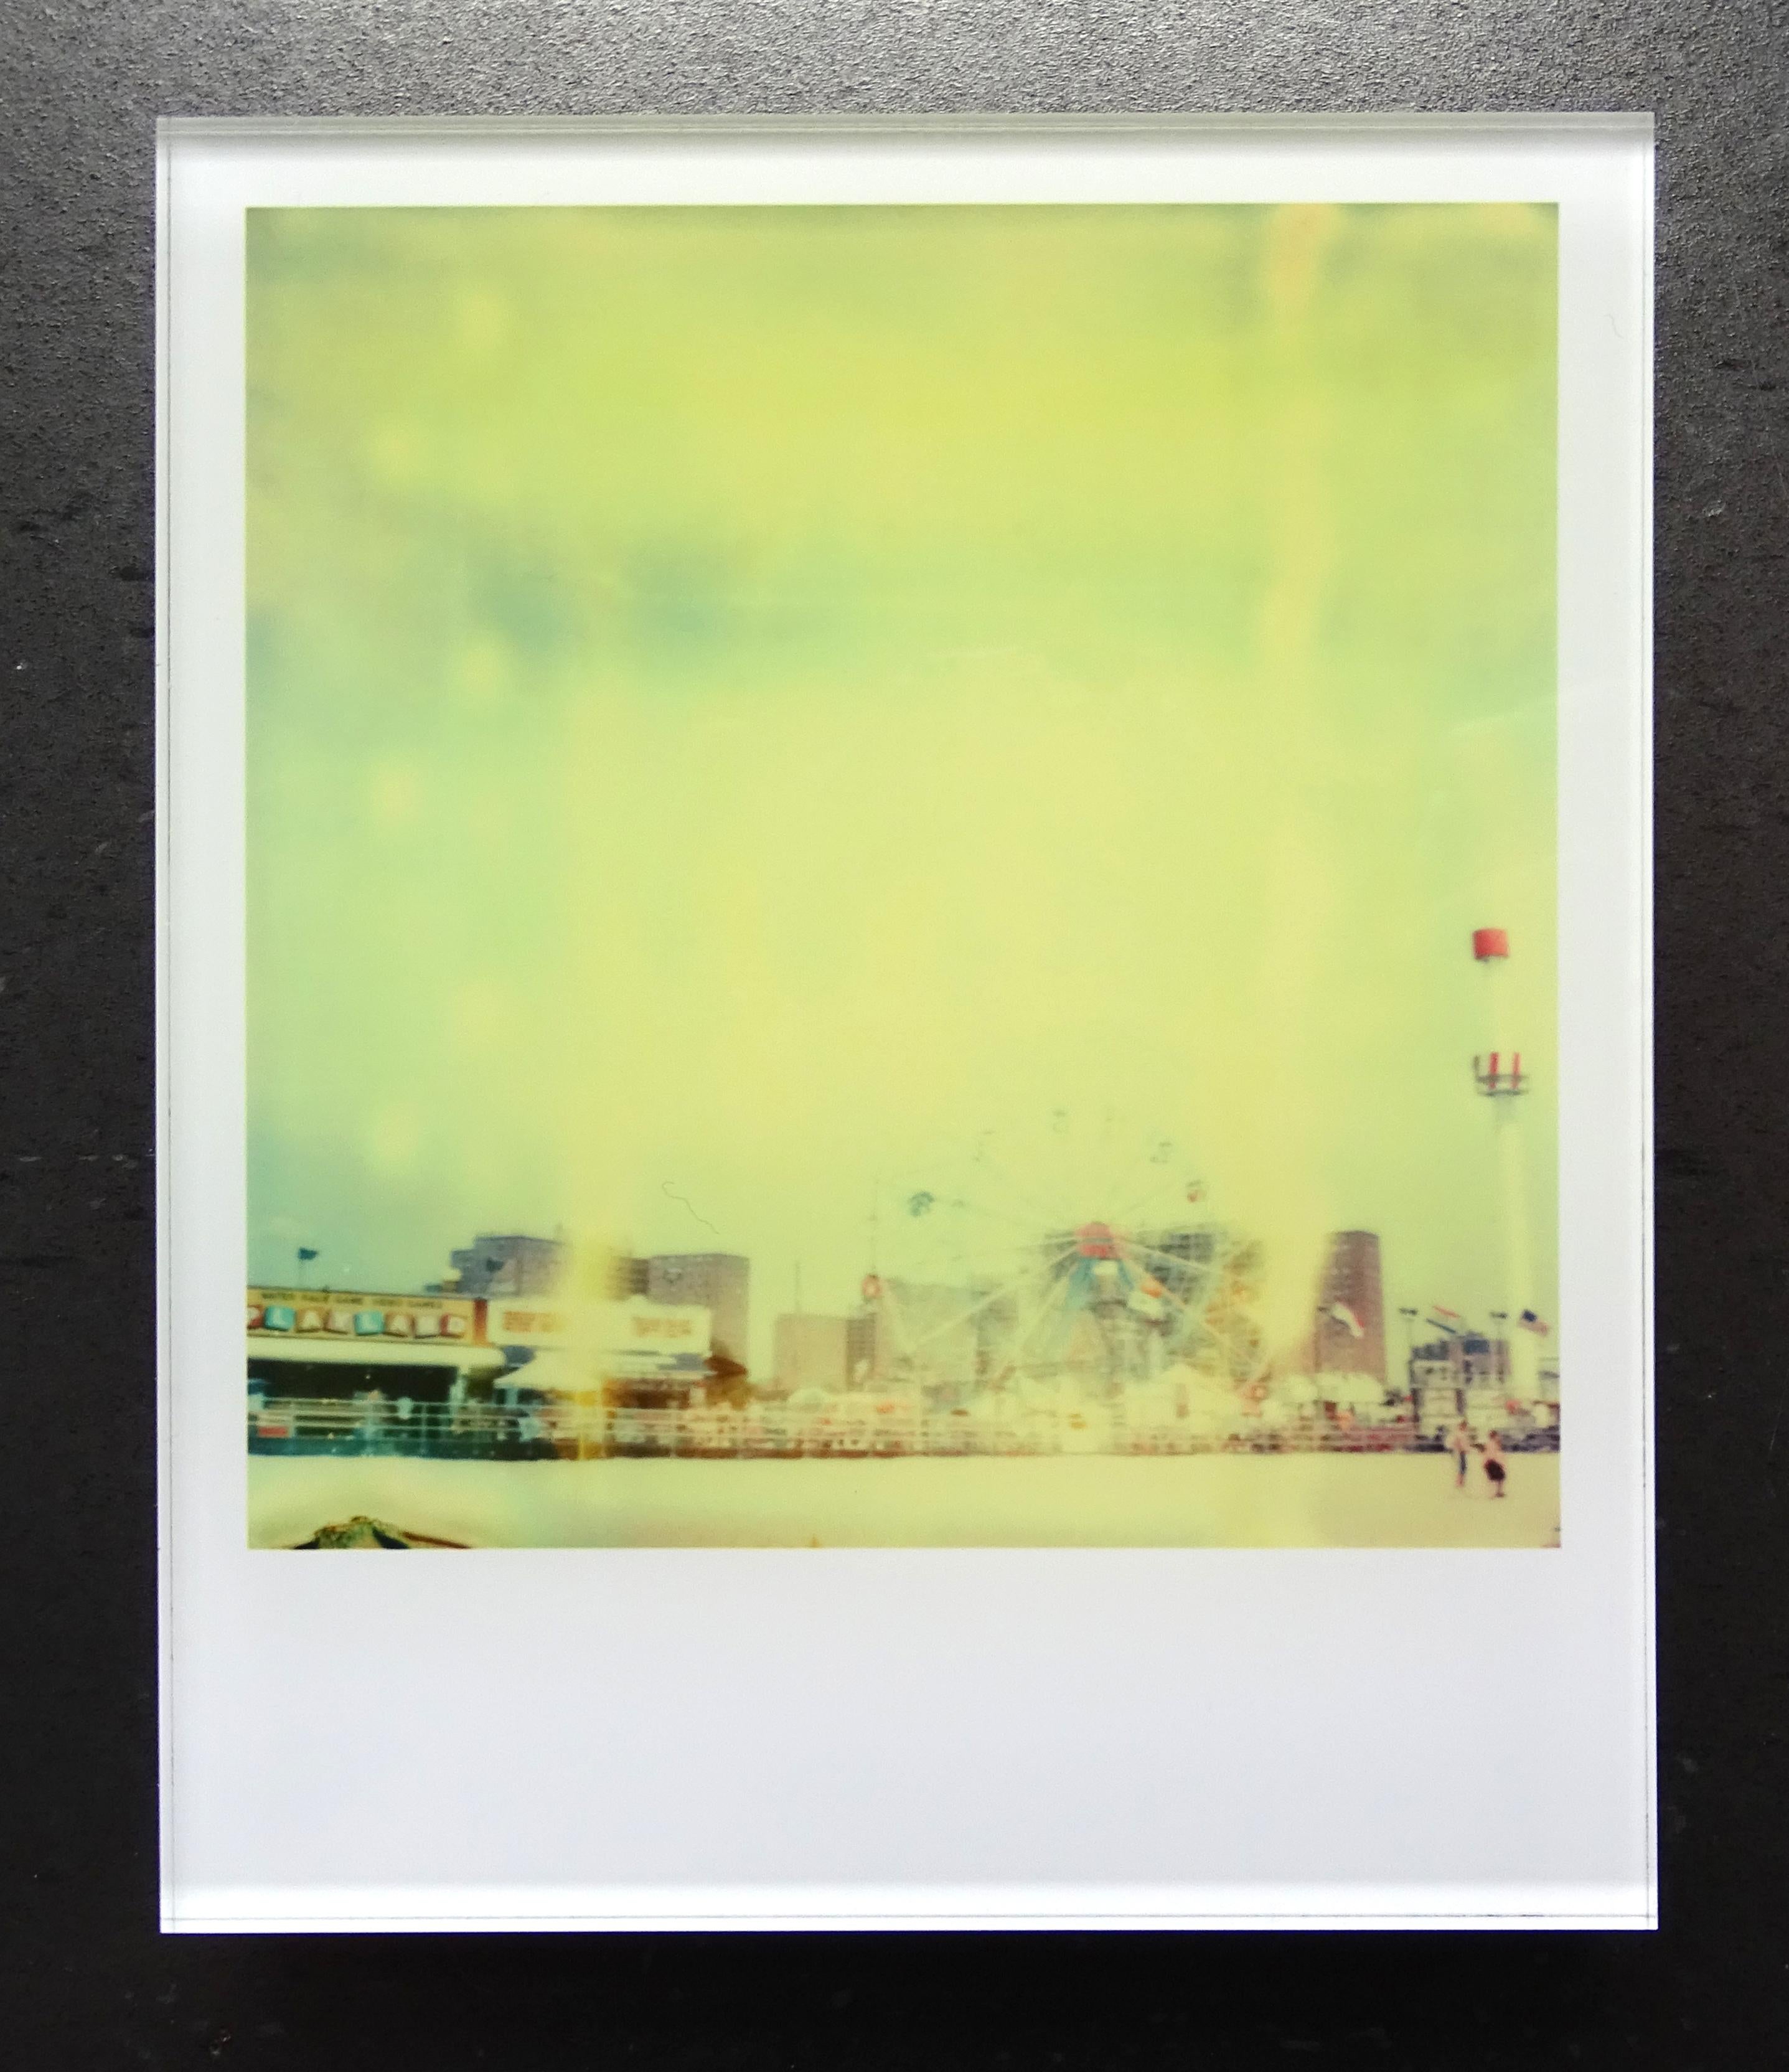 Die Minis von Stefanie Schneider
Coney Island (Aufenthalt), 2006

Verso signiert und Signaturmarke.
Digitale Lambda-Farbfotografien auf der Grundlage eines Polaroids.
Eingeklemmt zwischen Plexiglas (Dicke 0,7 cm)

aus dem Film 'Stay' von Marc